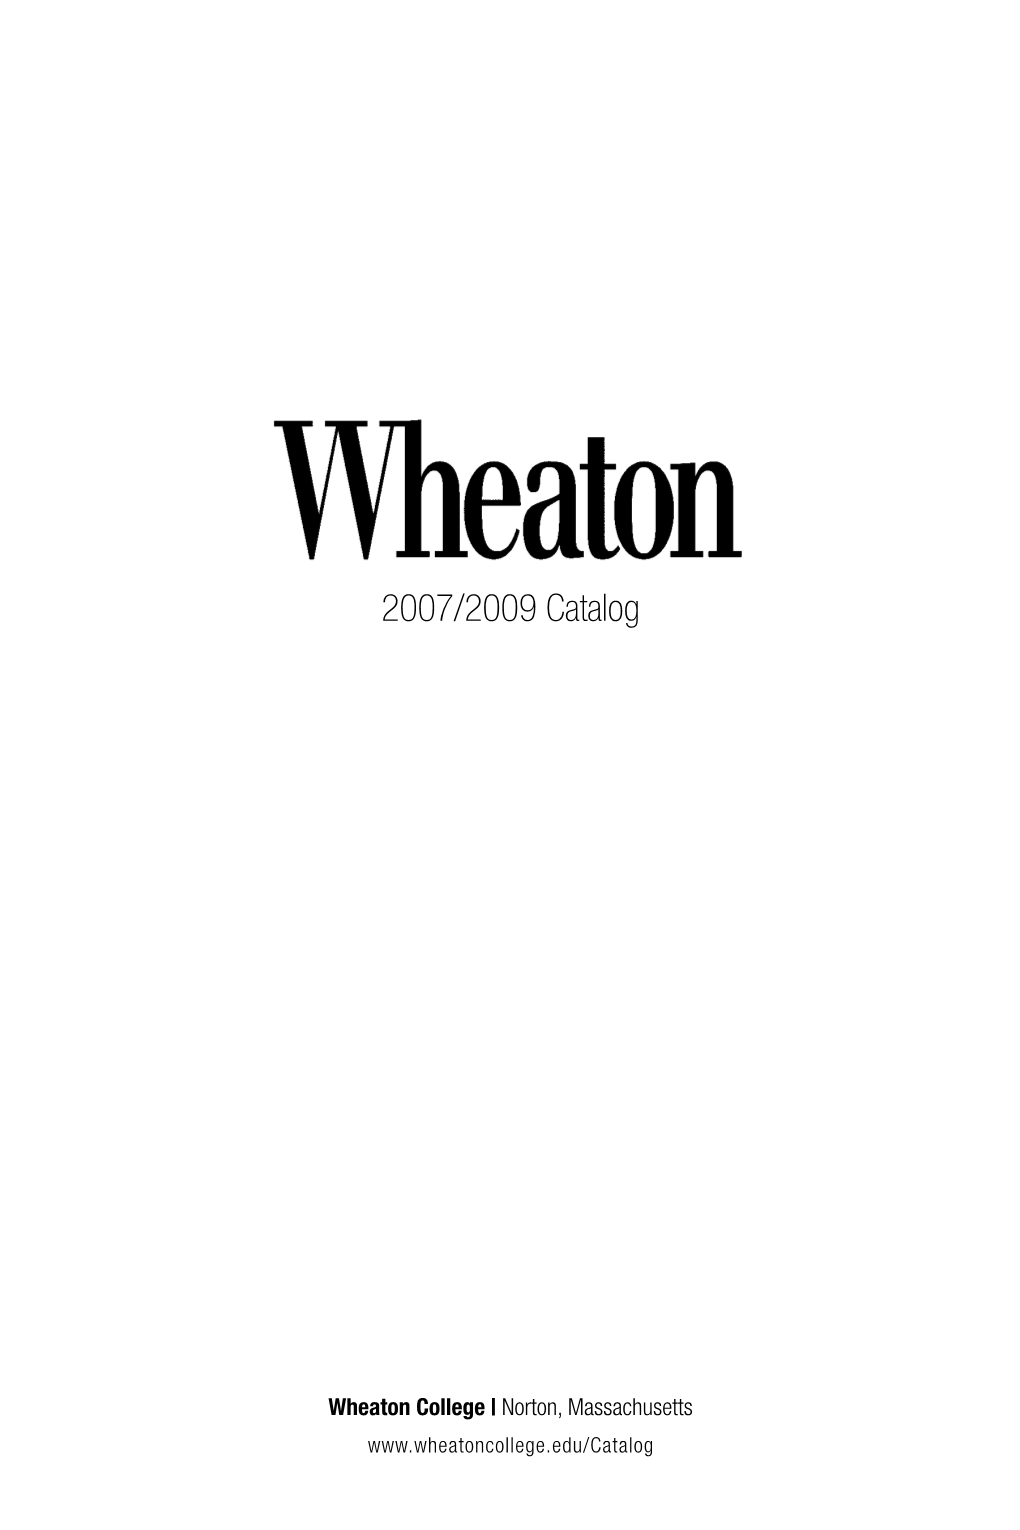 Wheaton College Catalog 2007-2009 (Pdf)